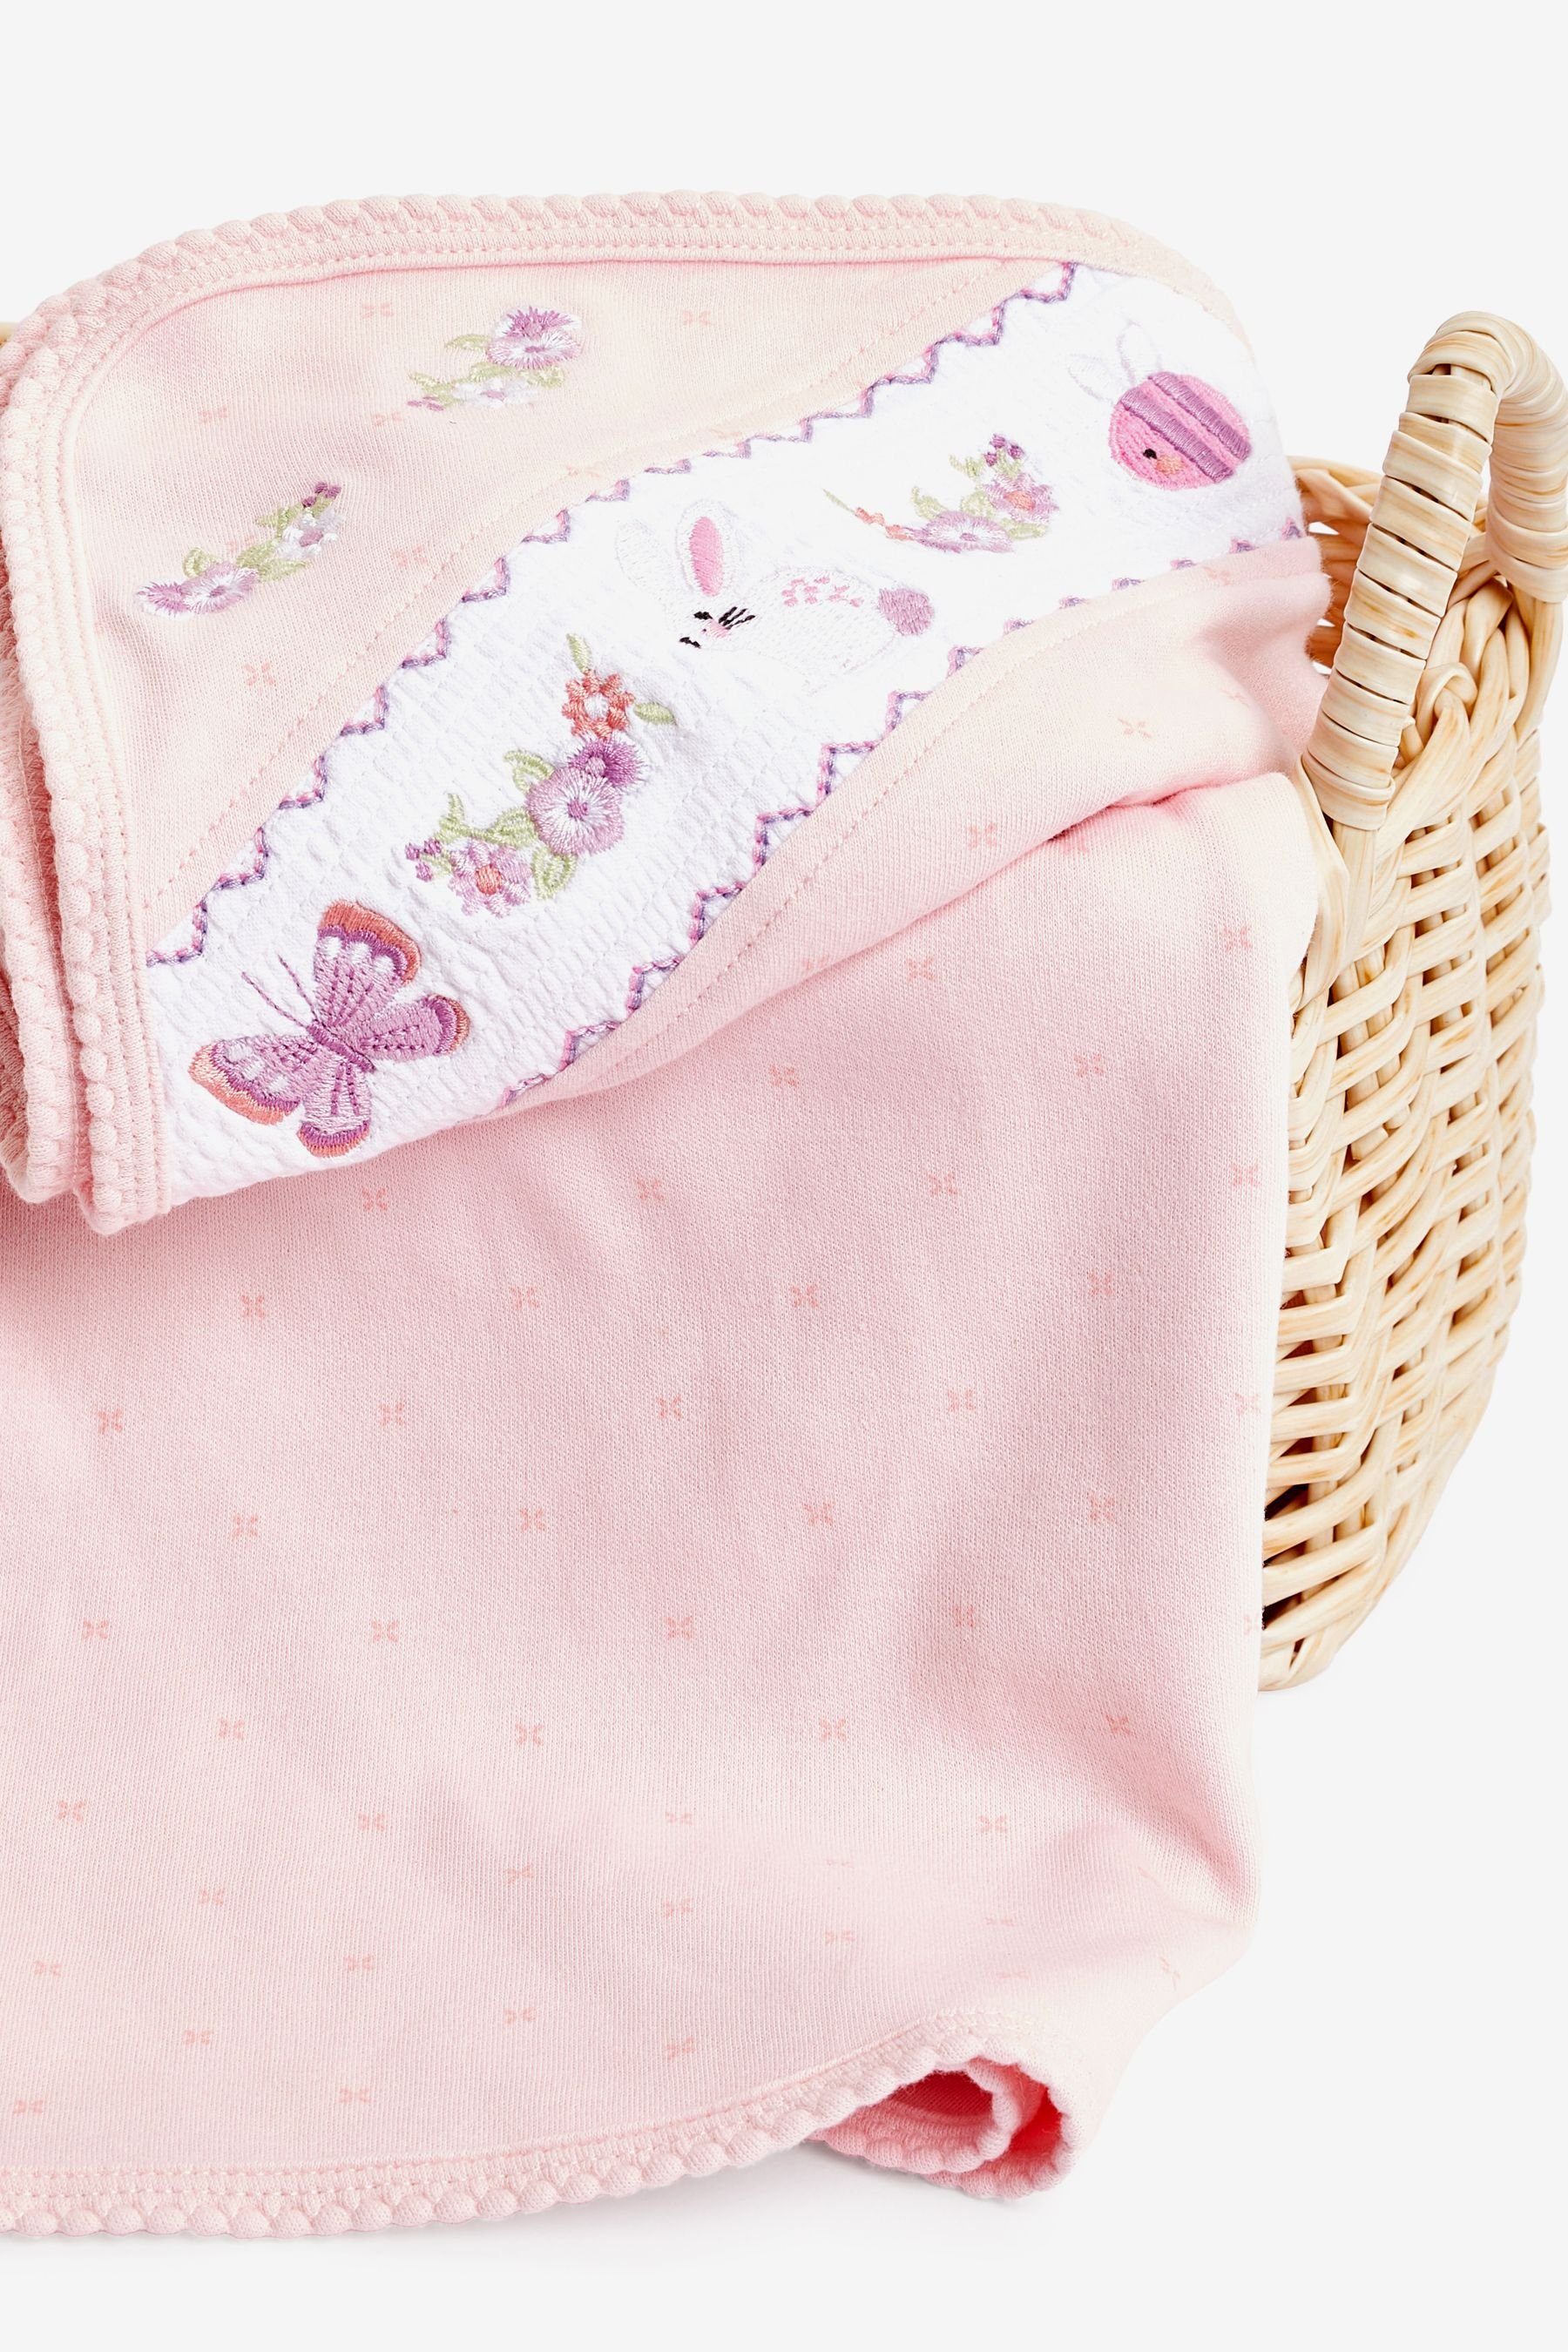 Babydecke aus Heritage Baumwolle, Jerseydecke Pink Baby Next 100 %